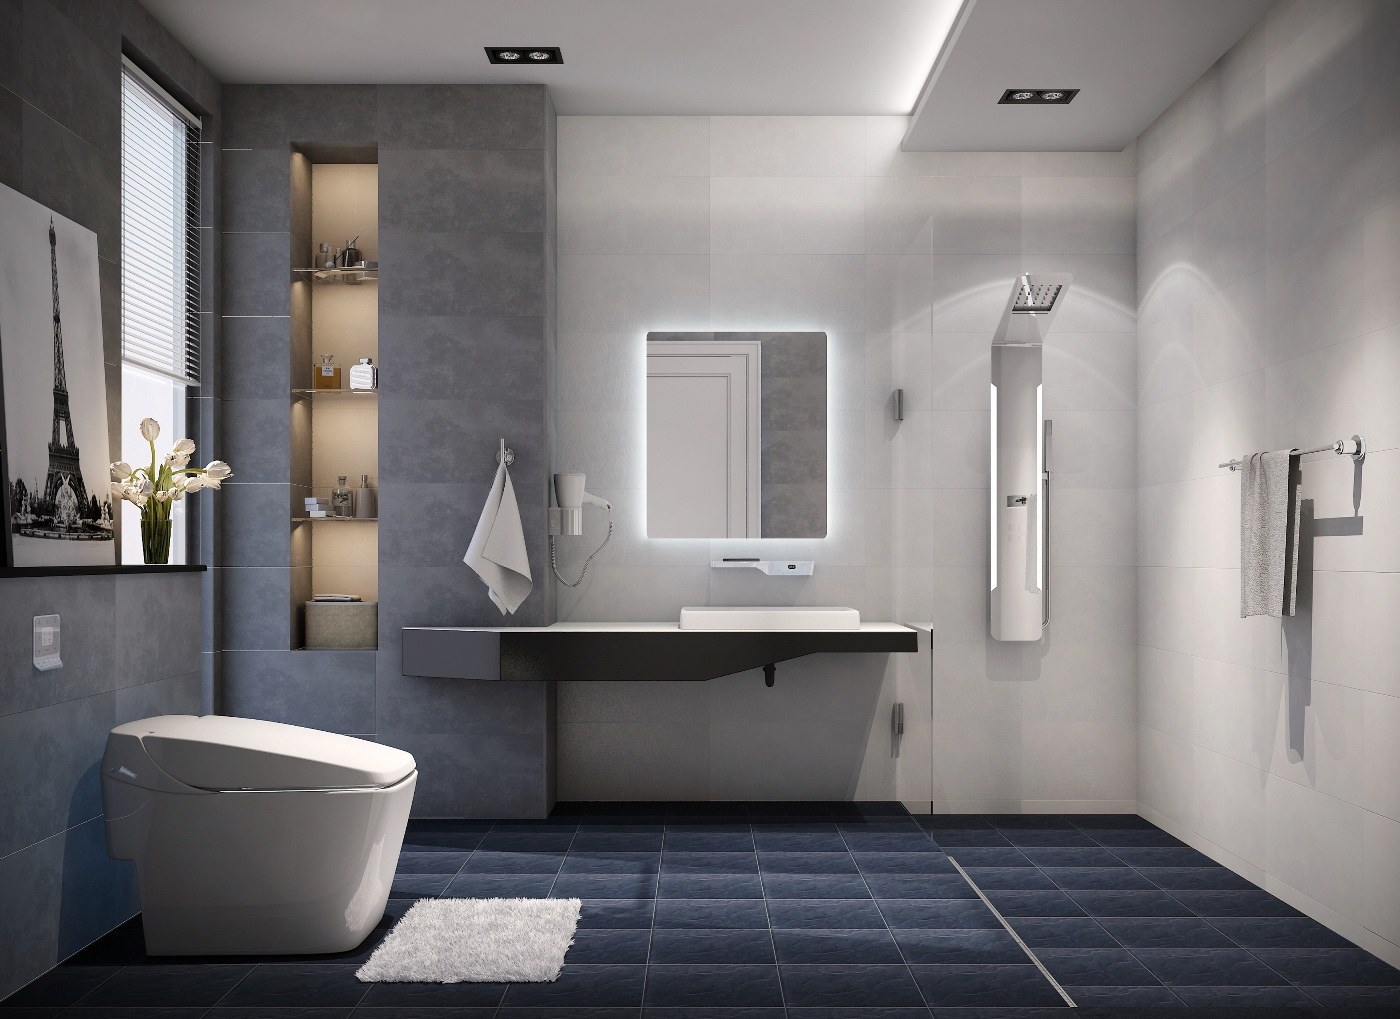 Bạn có thể thực sự thay đổi diện mạo nhà tắm của mình bằng cách thay đổi đồ nội thất phòng tắm.